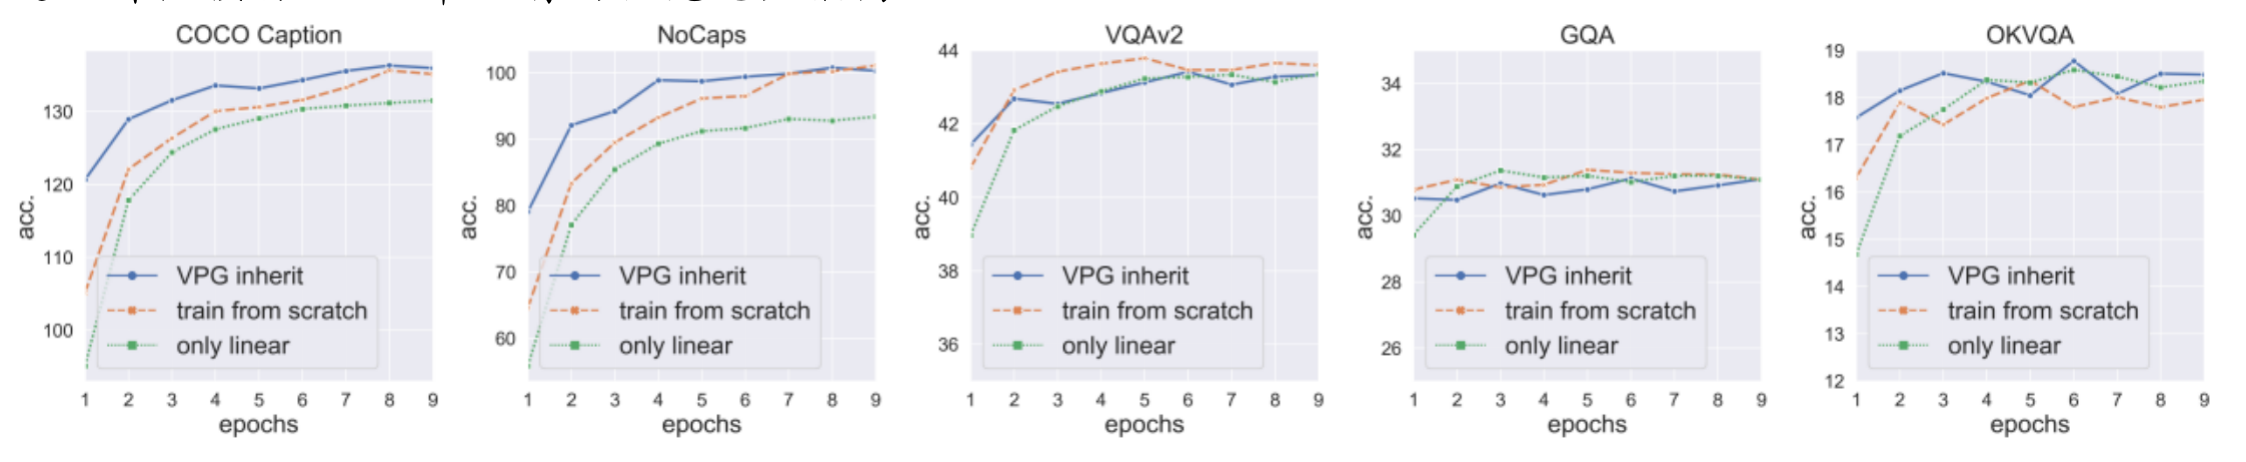 图 5：VPG inherit (蓝线): 直接继承训练好的VPG。train from scratch (橘线):从头训练VPG。only linear (绿线):只训练linear projector不训练VPG。